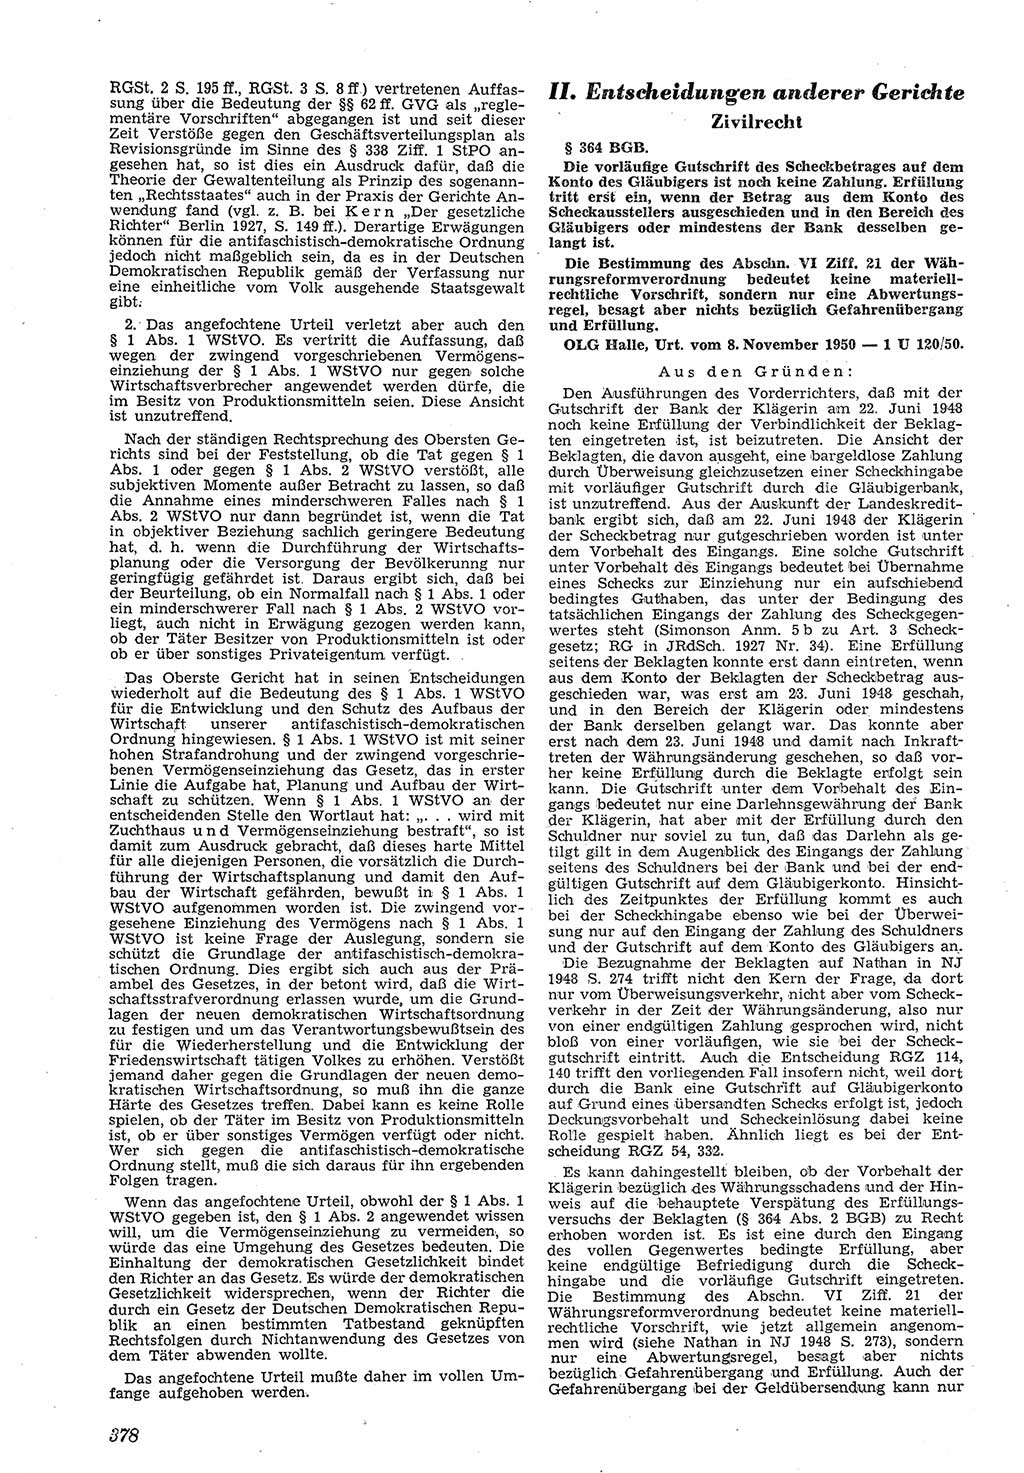 Neue Justiz (NJ), Zeitschrift für Recht und Rechtswissenschaft [Deutsche Demokratische Republik (DDR)], 5. Jahrgang 1951, Seite 378 (NJ DDR 1951, S. 378)